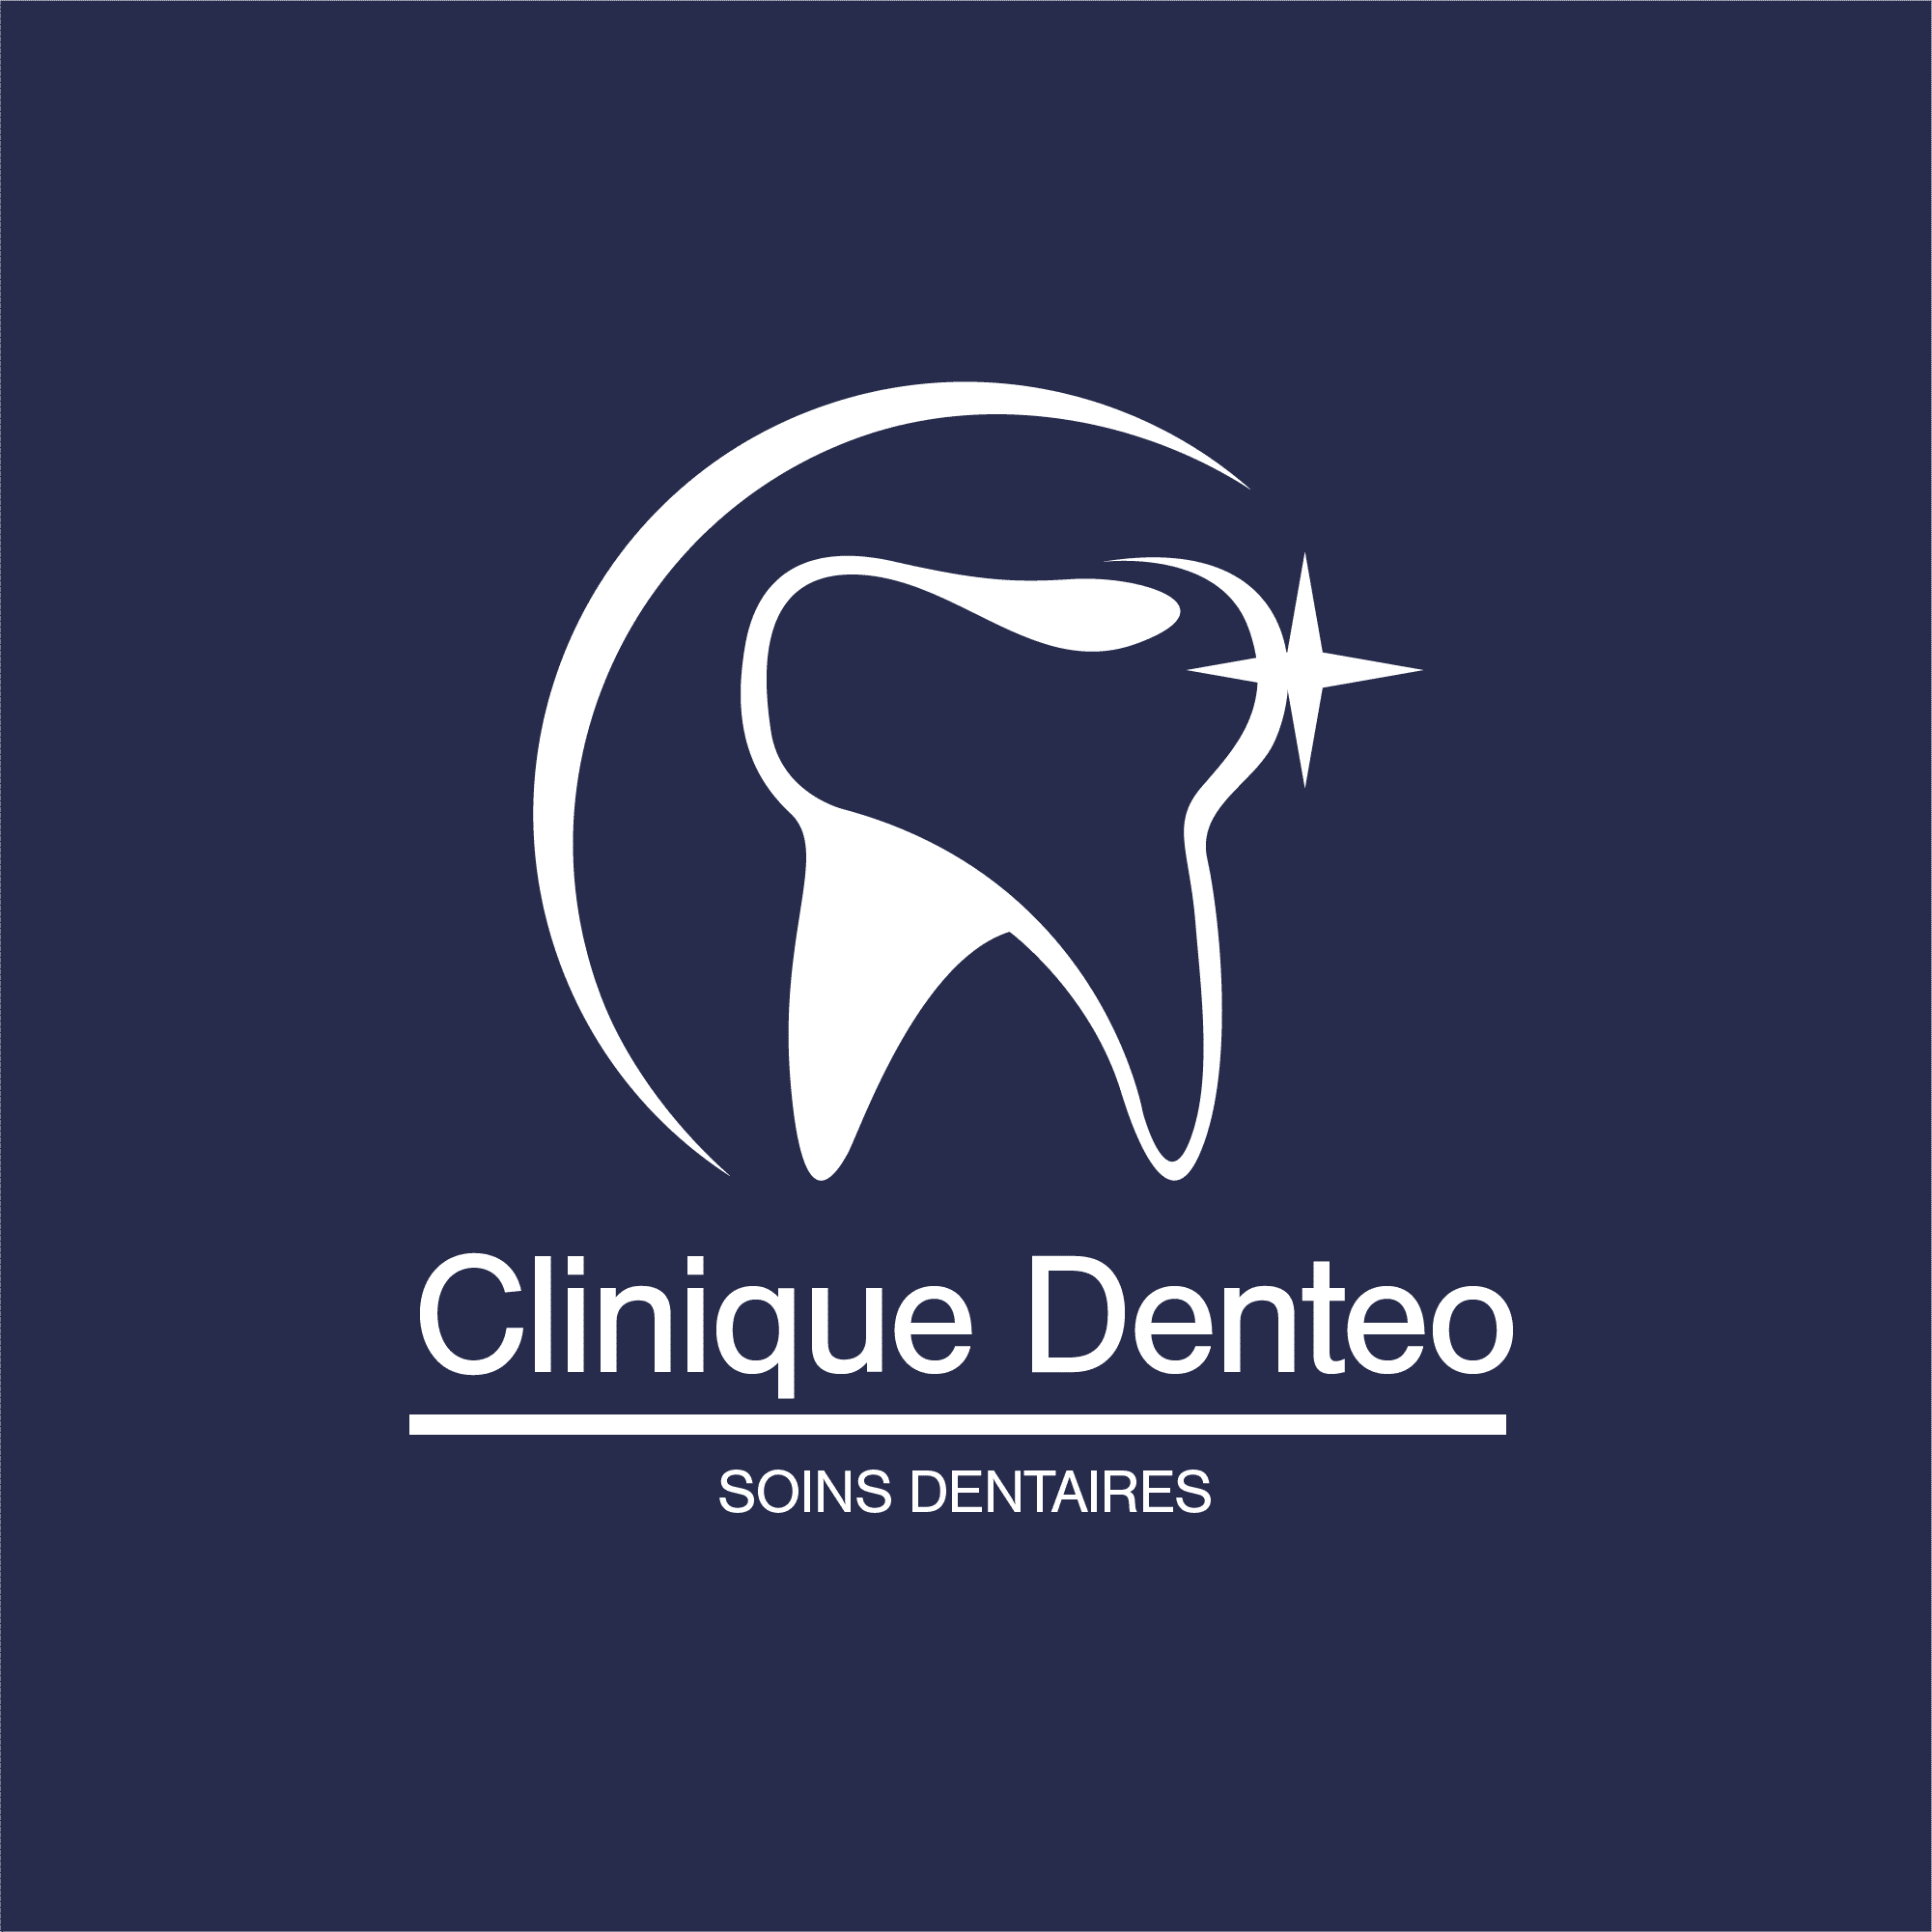 Clinique Denteo